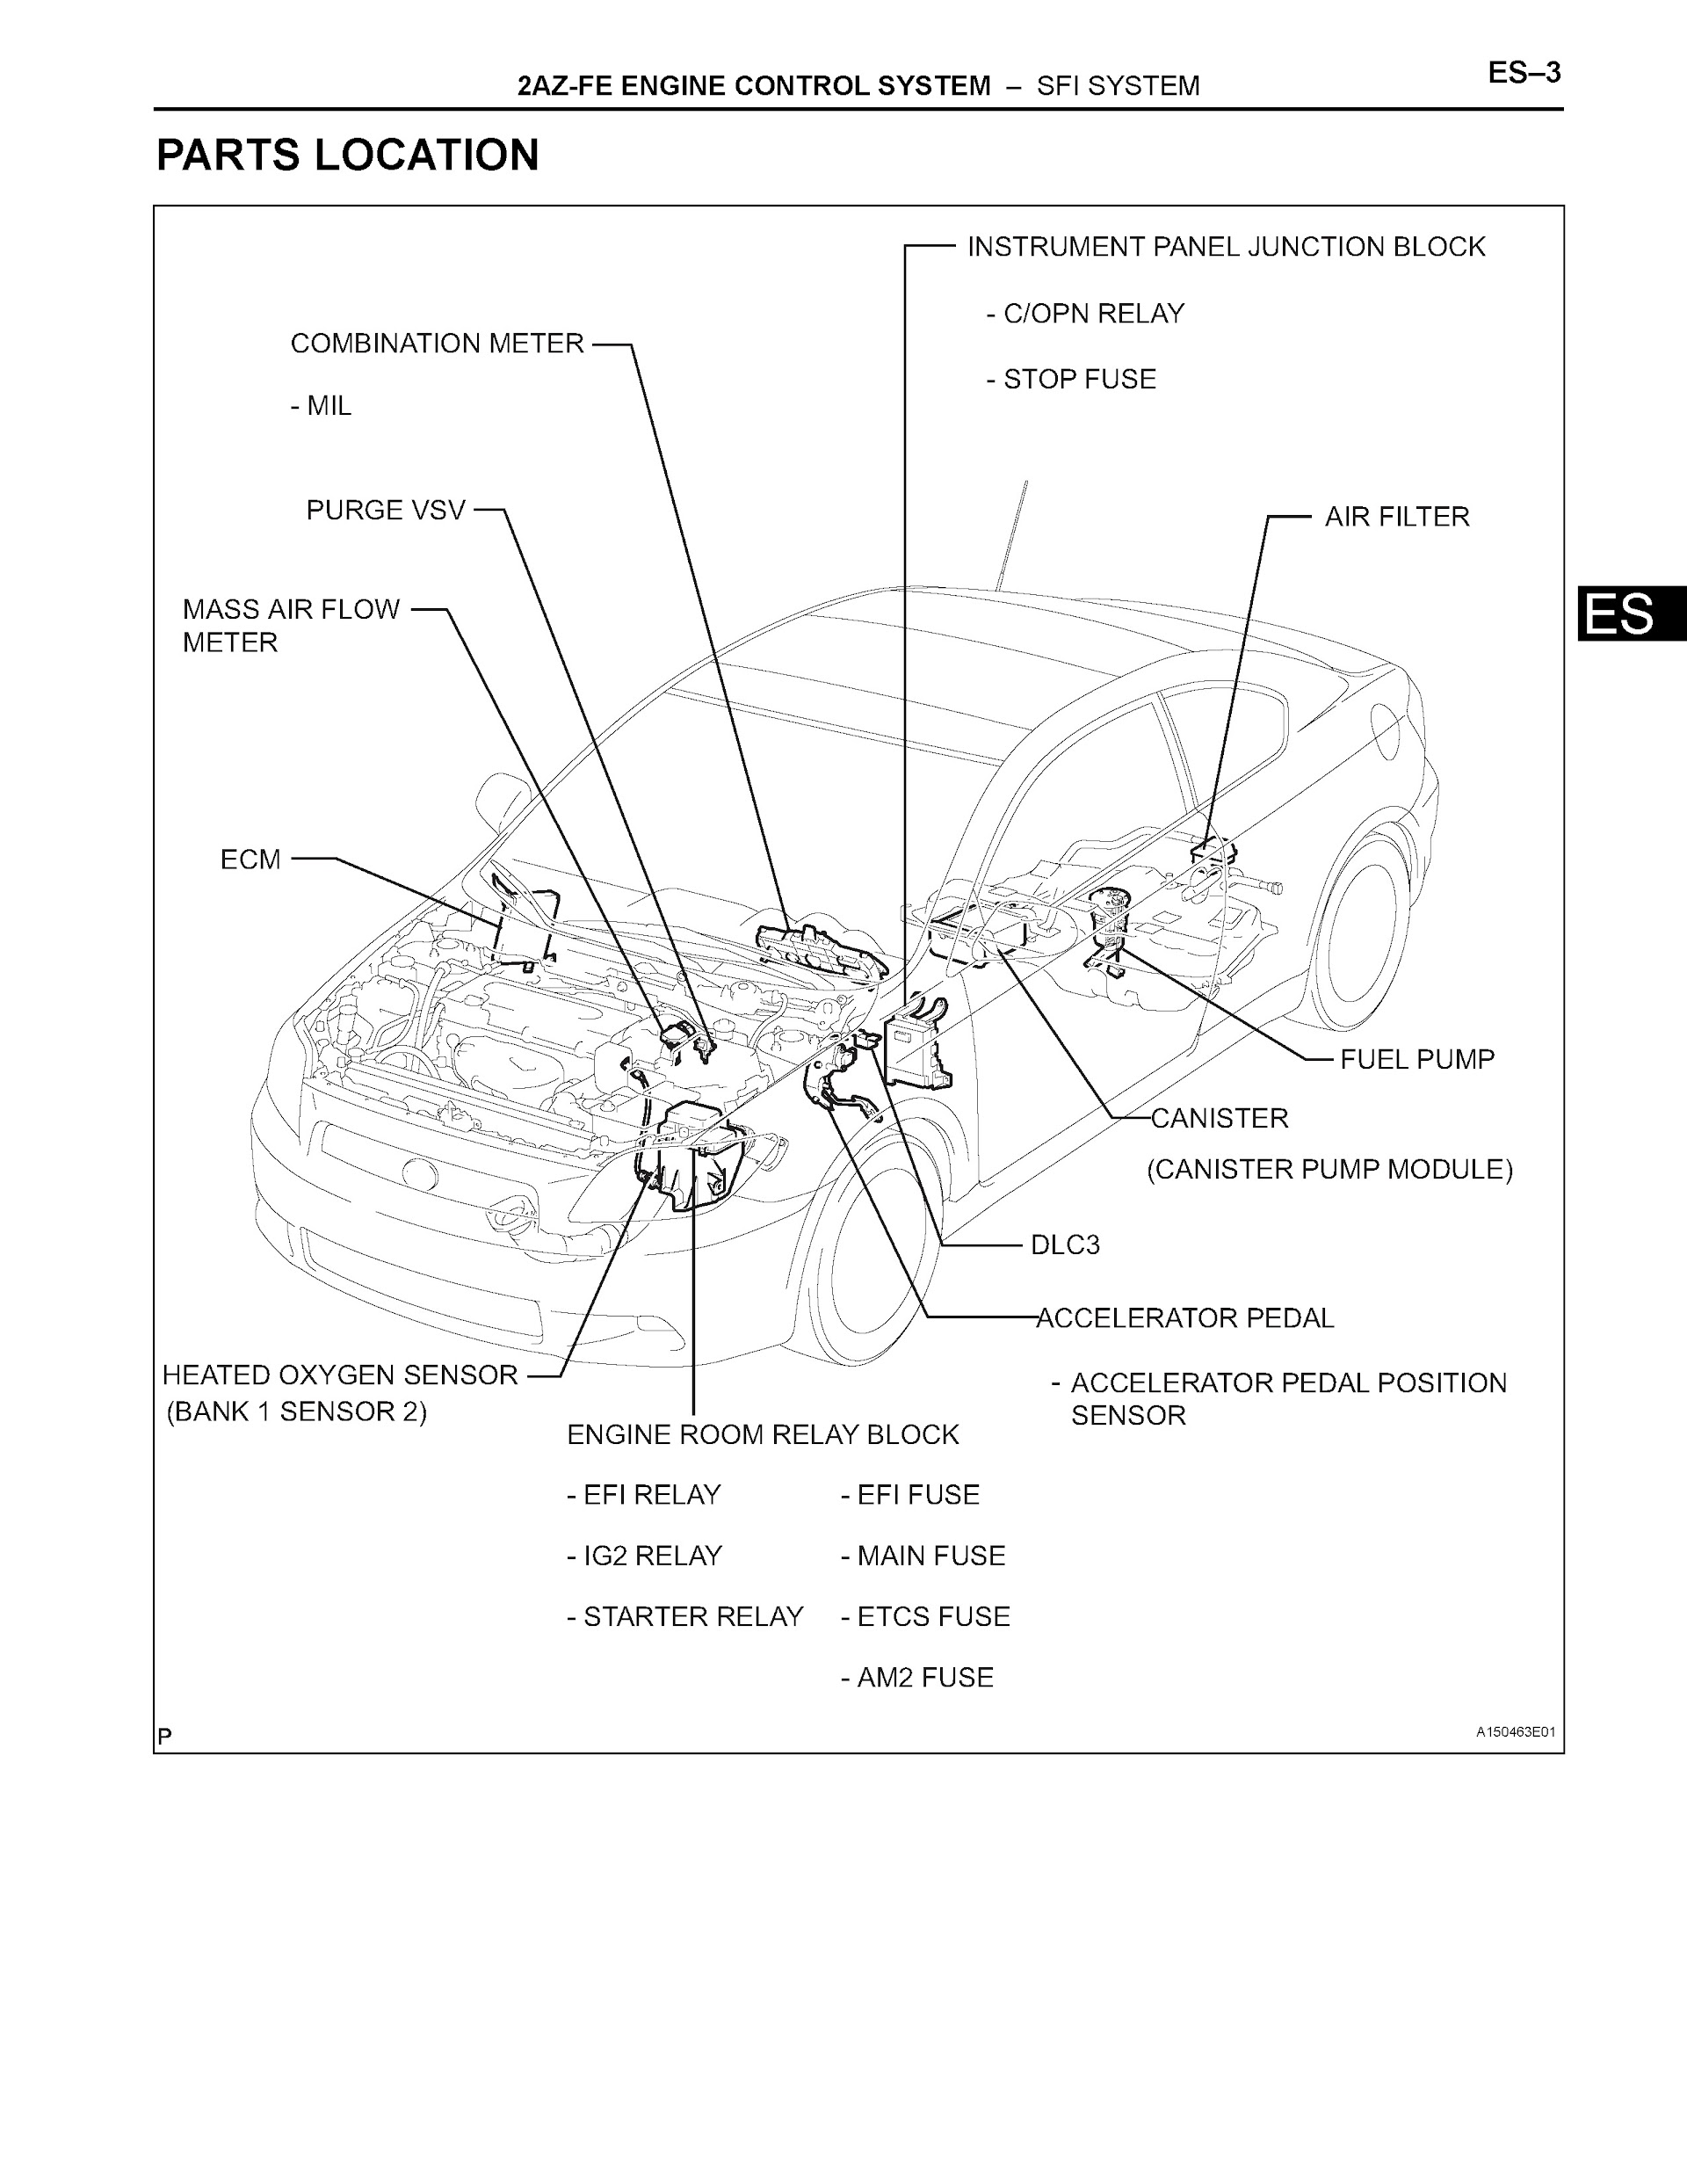 2005 scion tc repair manual pdf